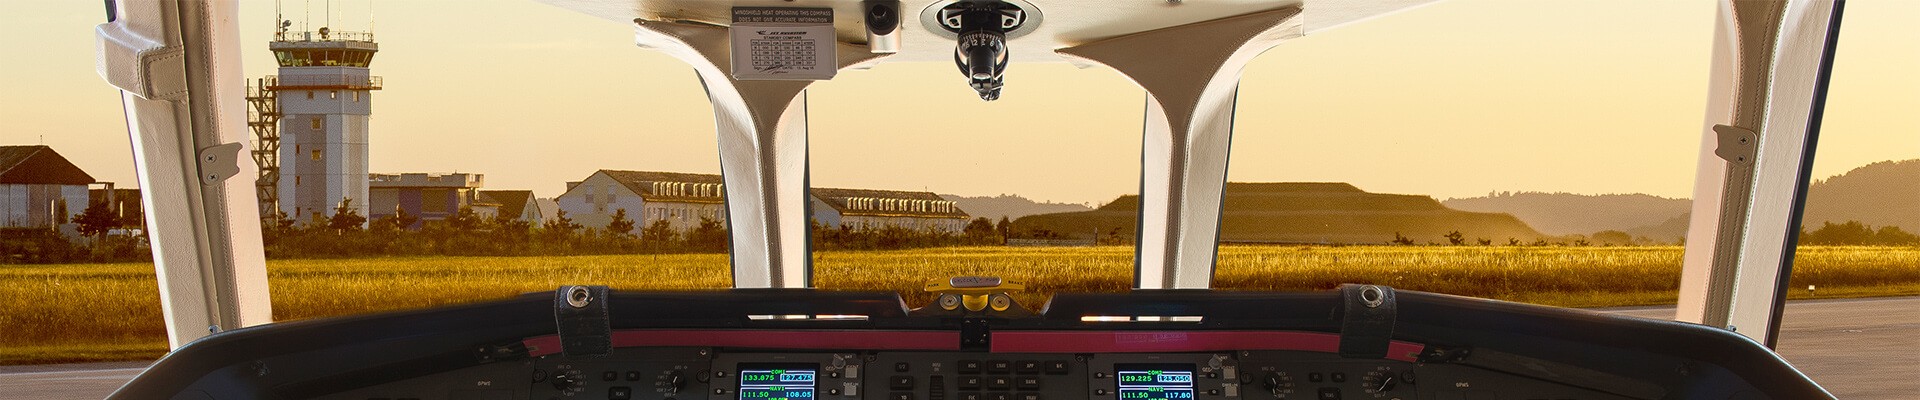 Blick aus dem Cockpit